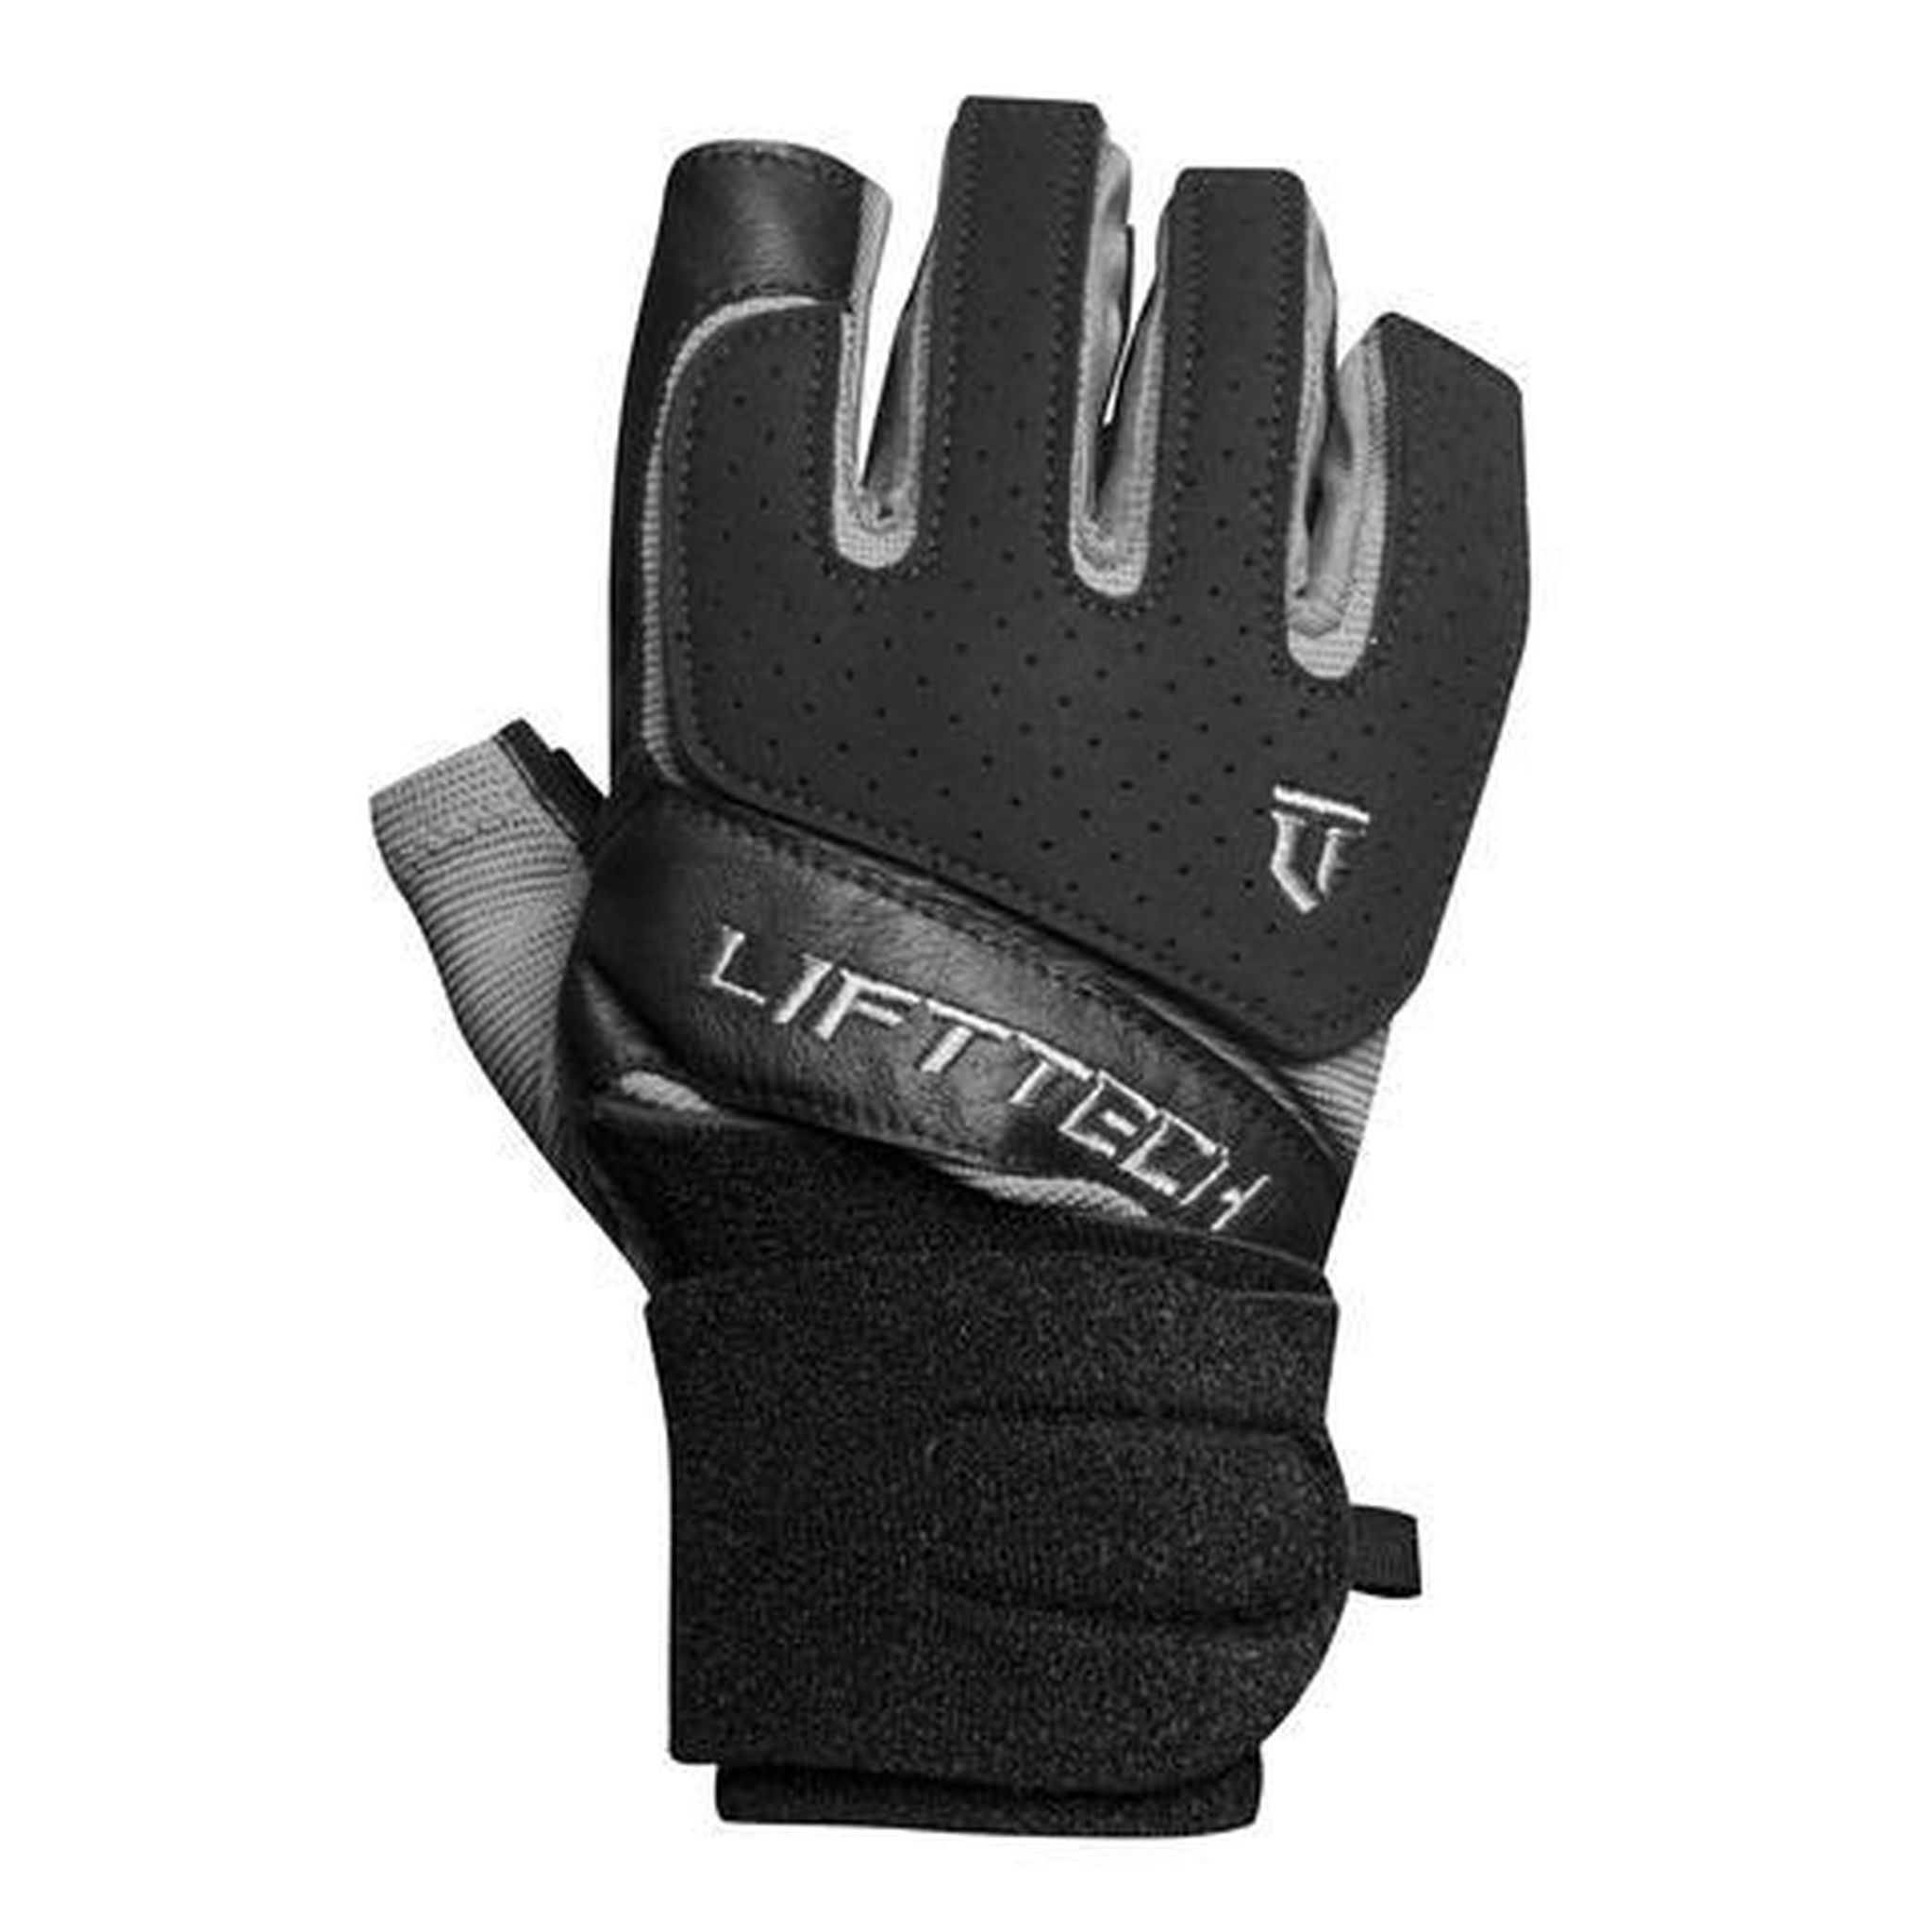 LIFT TECH Klutch Wrist Wrap Weight Training Gloves